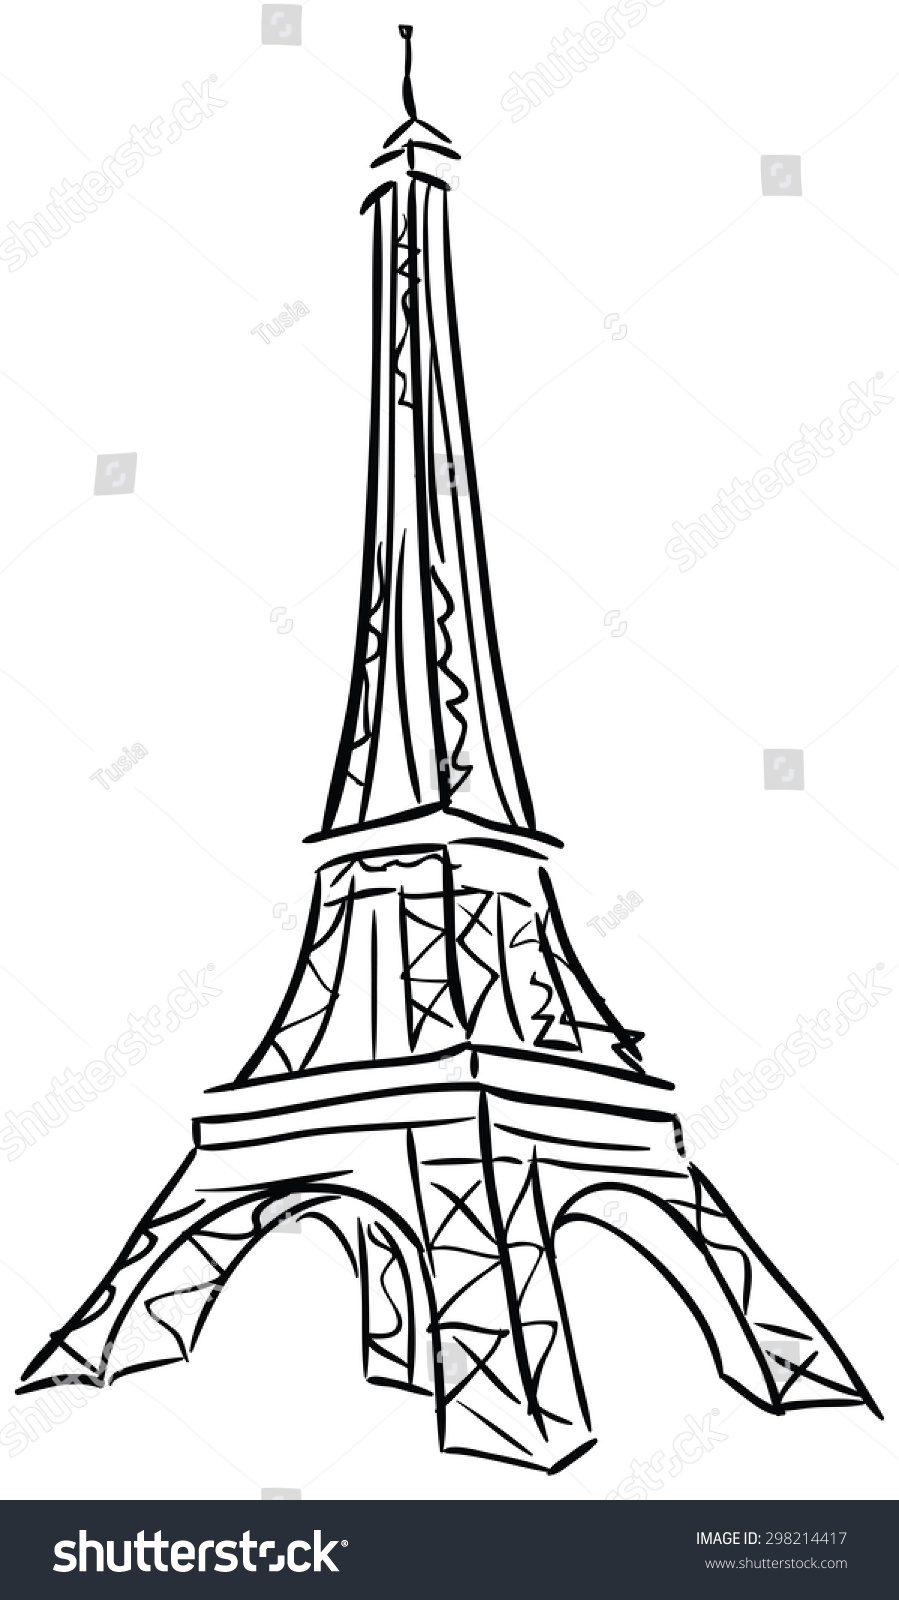 Immagine Vettoriale Stock A Tema Illustrazione Vettoriale Della Torre Eiffel Disegno Royalty Free